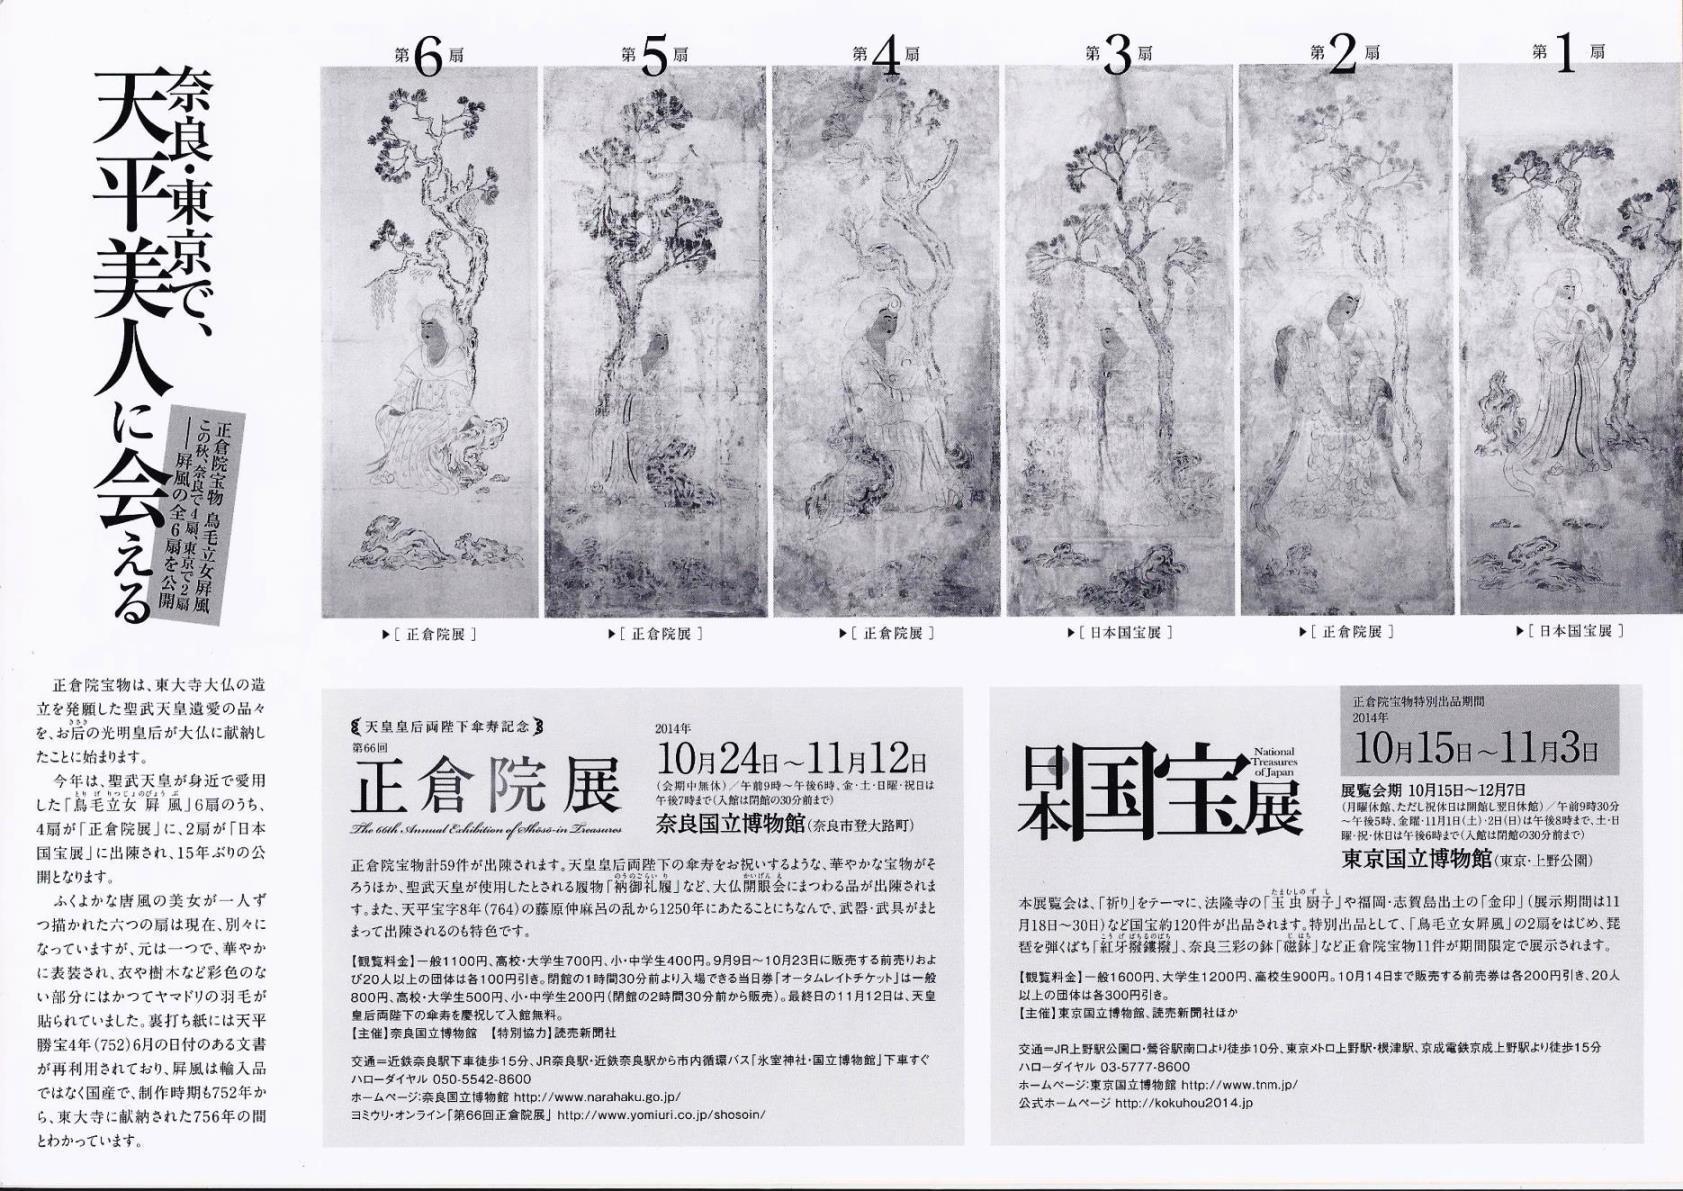 見ごたえ充分な「特別企画 正倉院展ポスター」＠奈良国立博物館(地下